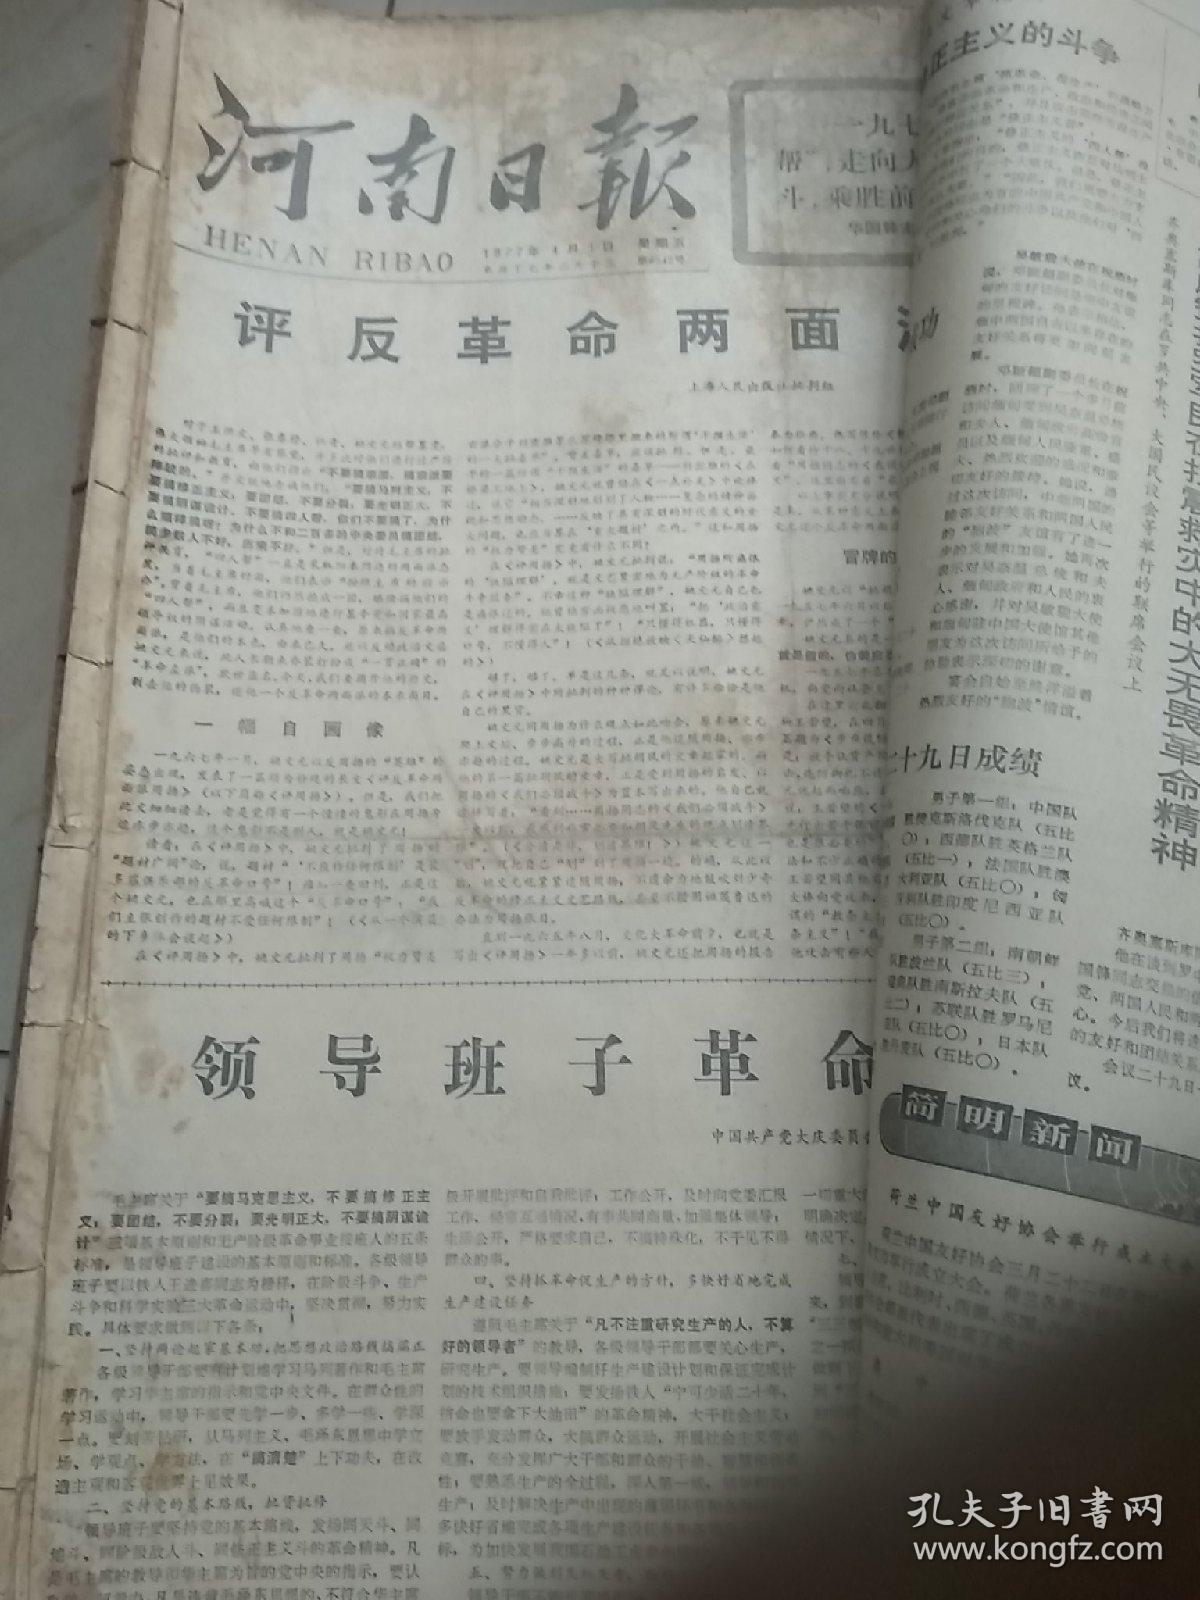 老报纸、生日报〈华主政时期〉：河南日报1977.3.1~7.29。1977.11.1~11.30。(合订本。六本合售)